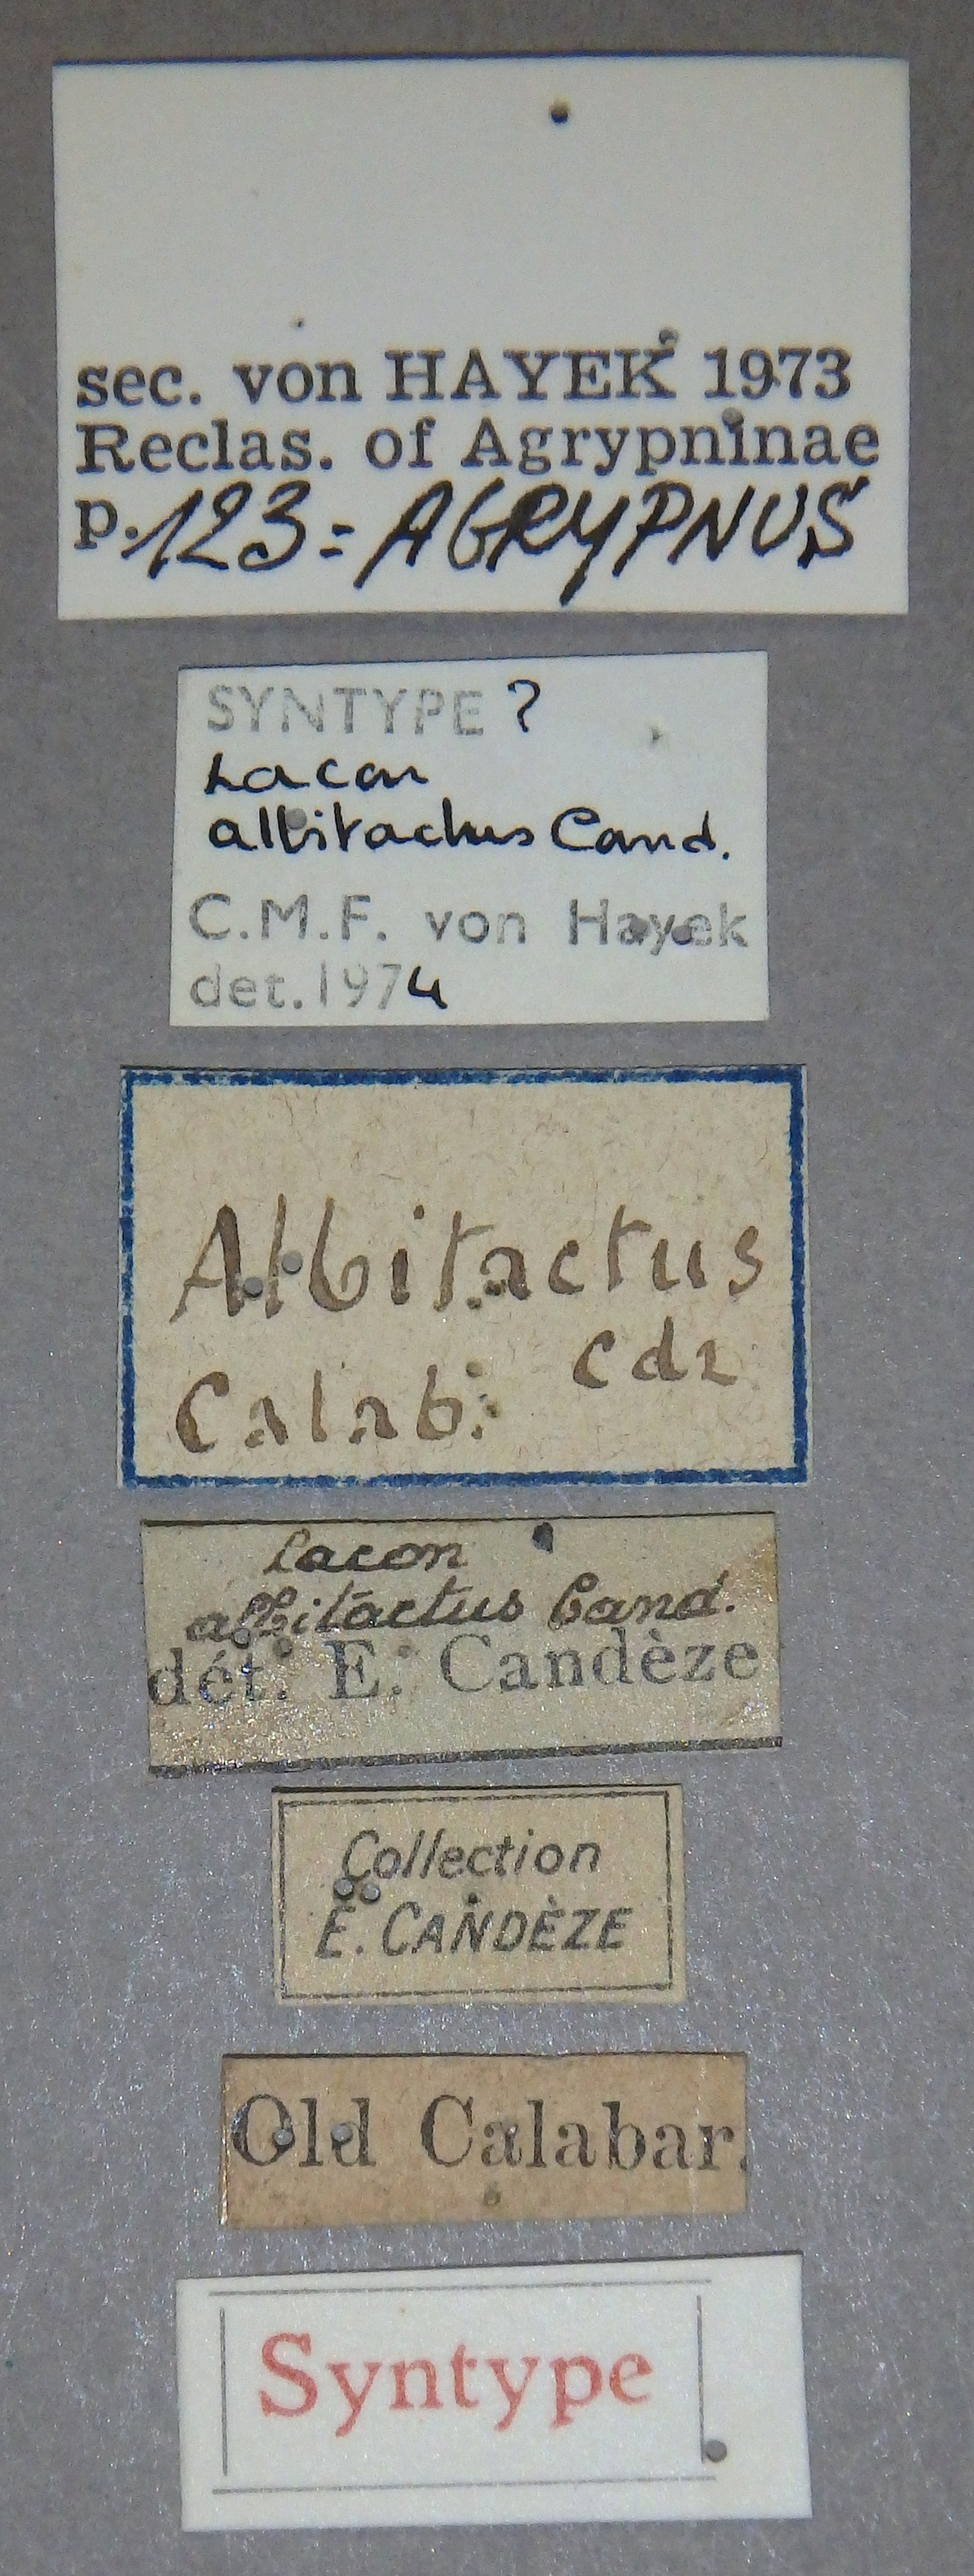 Lacon albitactus st Lb.jpg